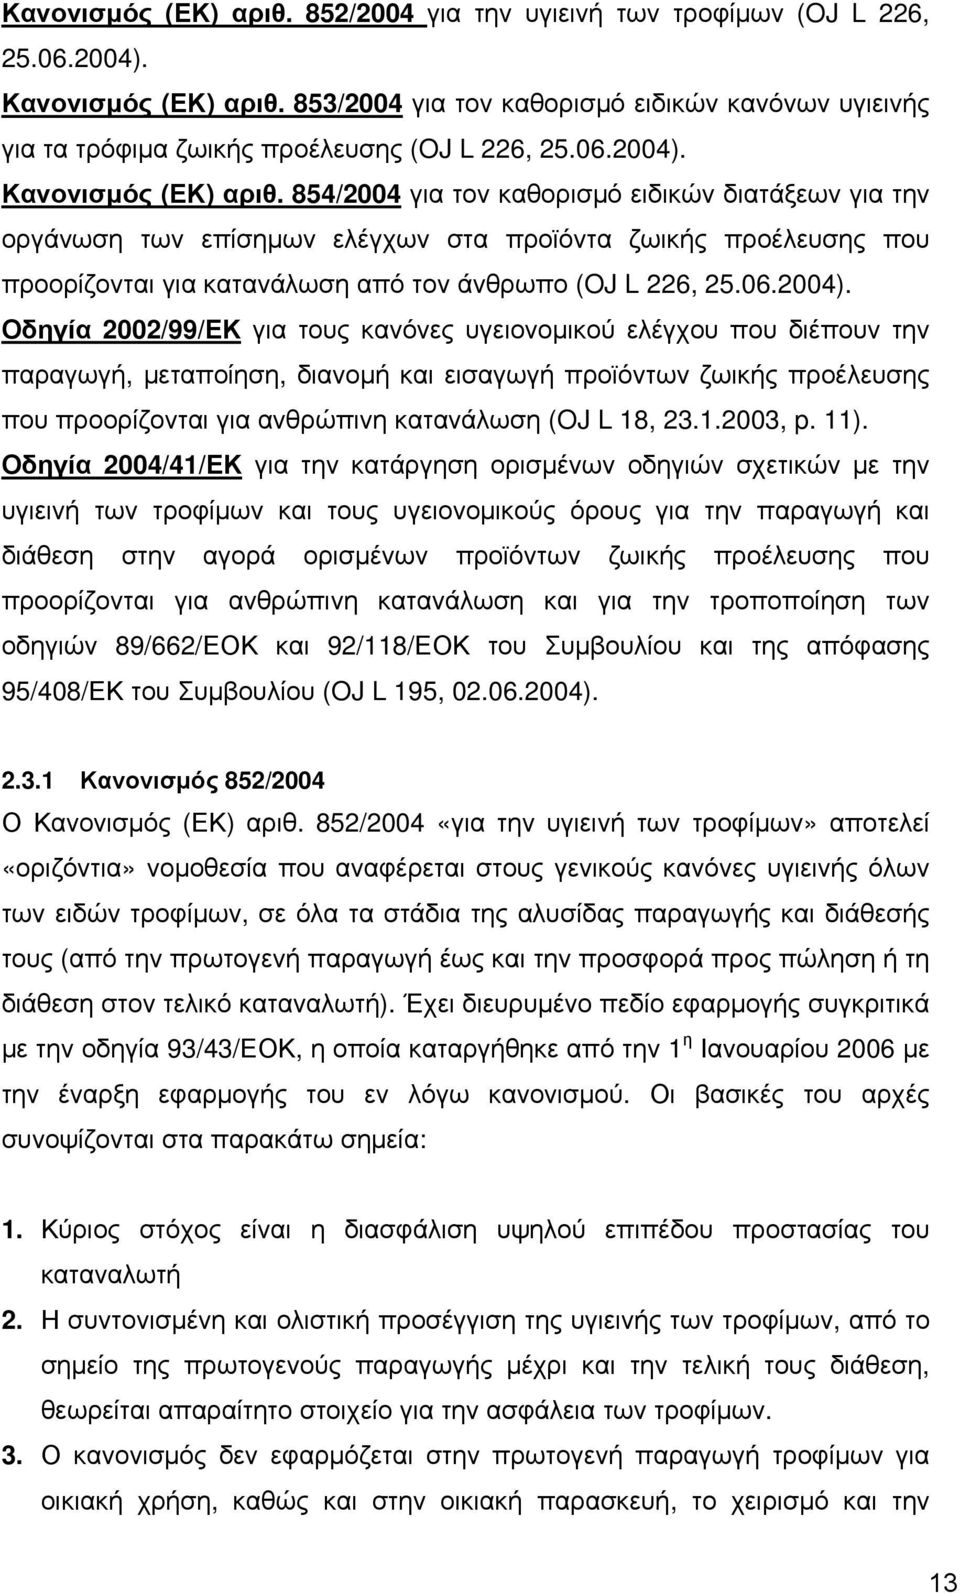 854/2004 για τον καθορισμό ειδικών διατάξεων για την οργάνωση των επίσημων ελέγχων στα προϊόντα ζωικής προέλευσης που προορίζονται για κατανάλωση από τον άνθρωπο (OJ L 226, 25.06.2004).